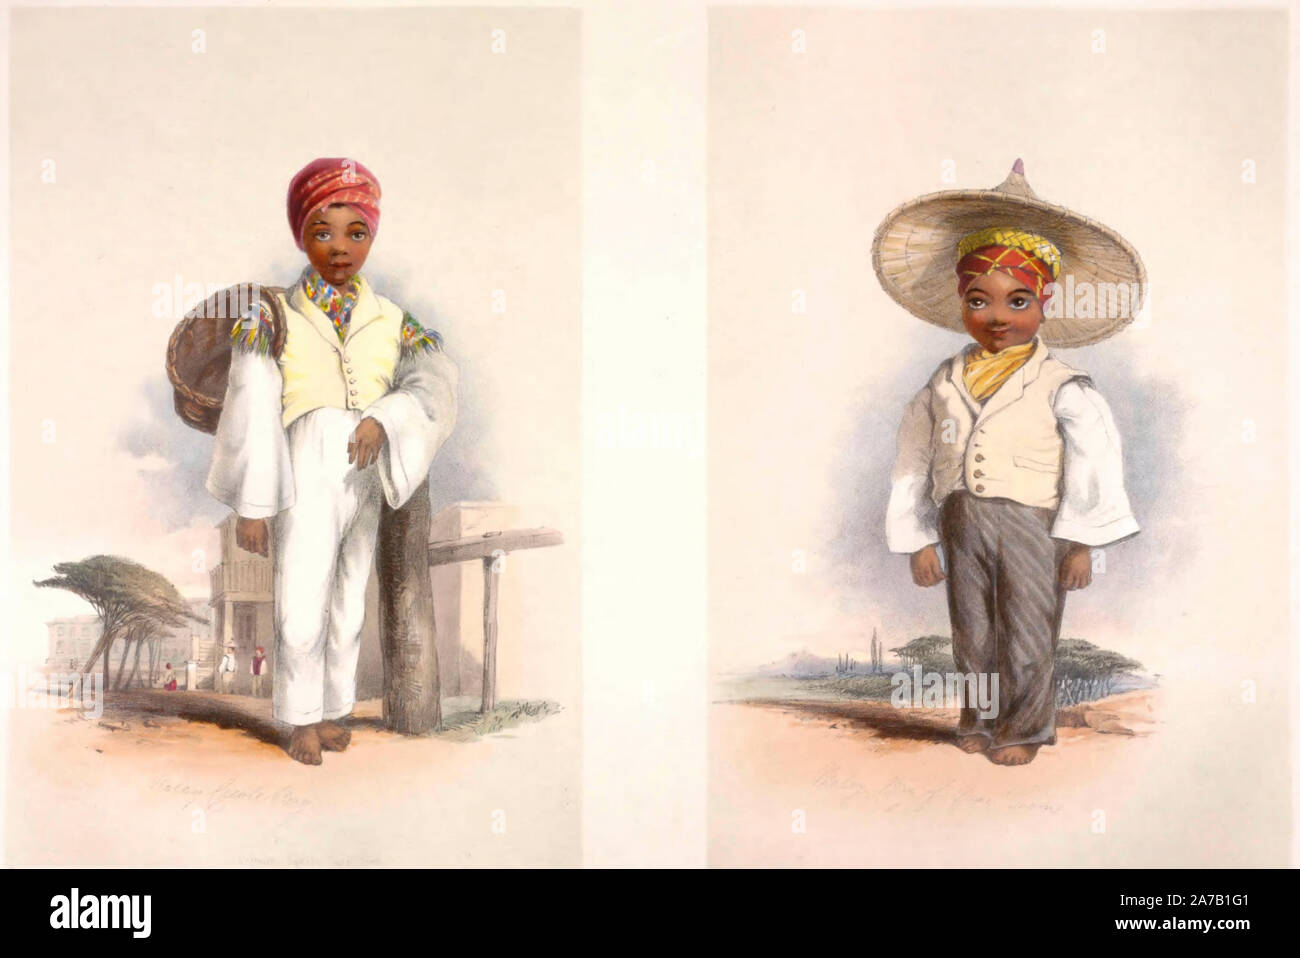 Ragazzi malese del Capo di Buona Speranza, circa 1849 Foto Stock